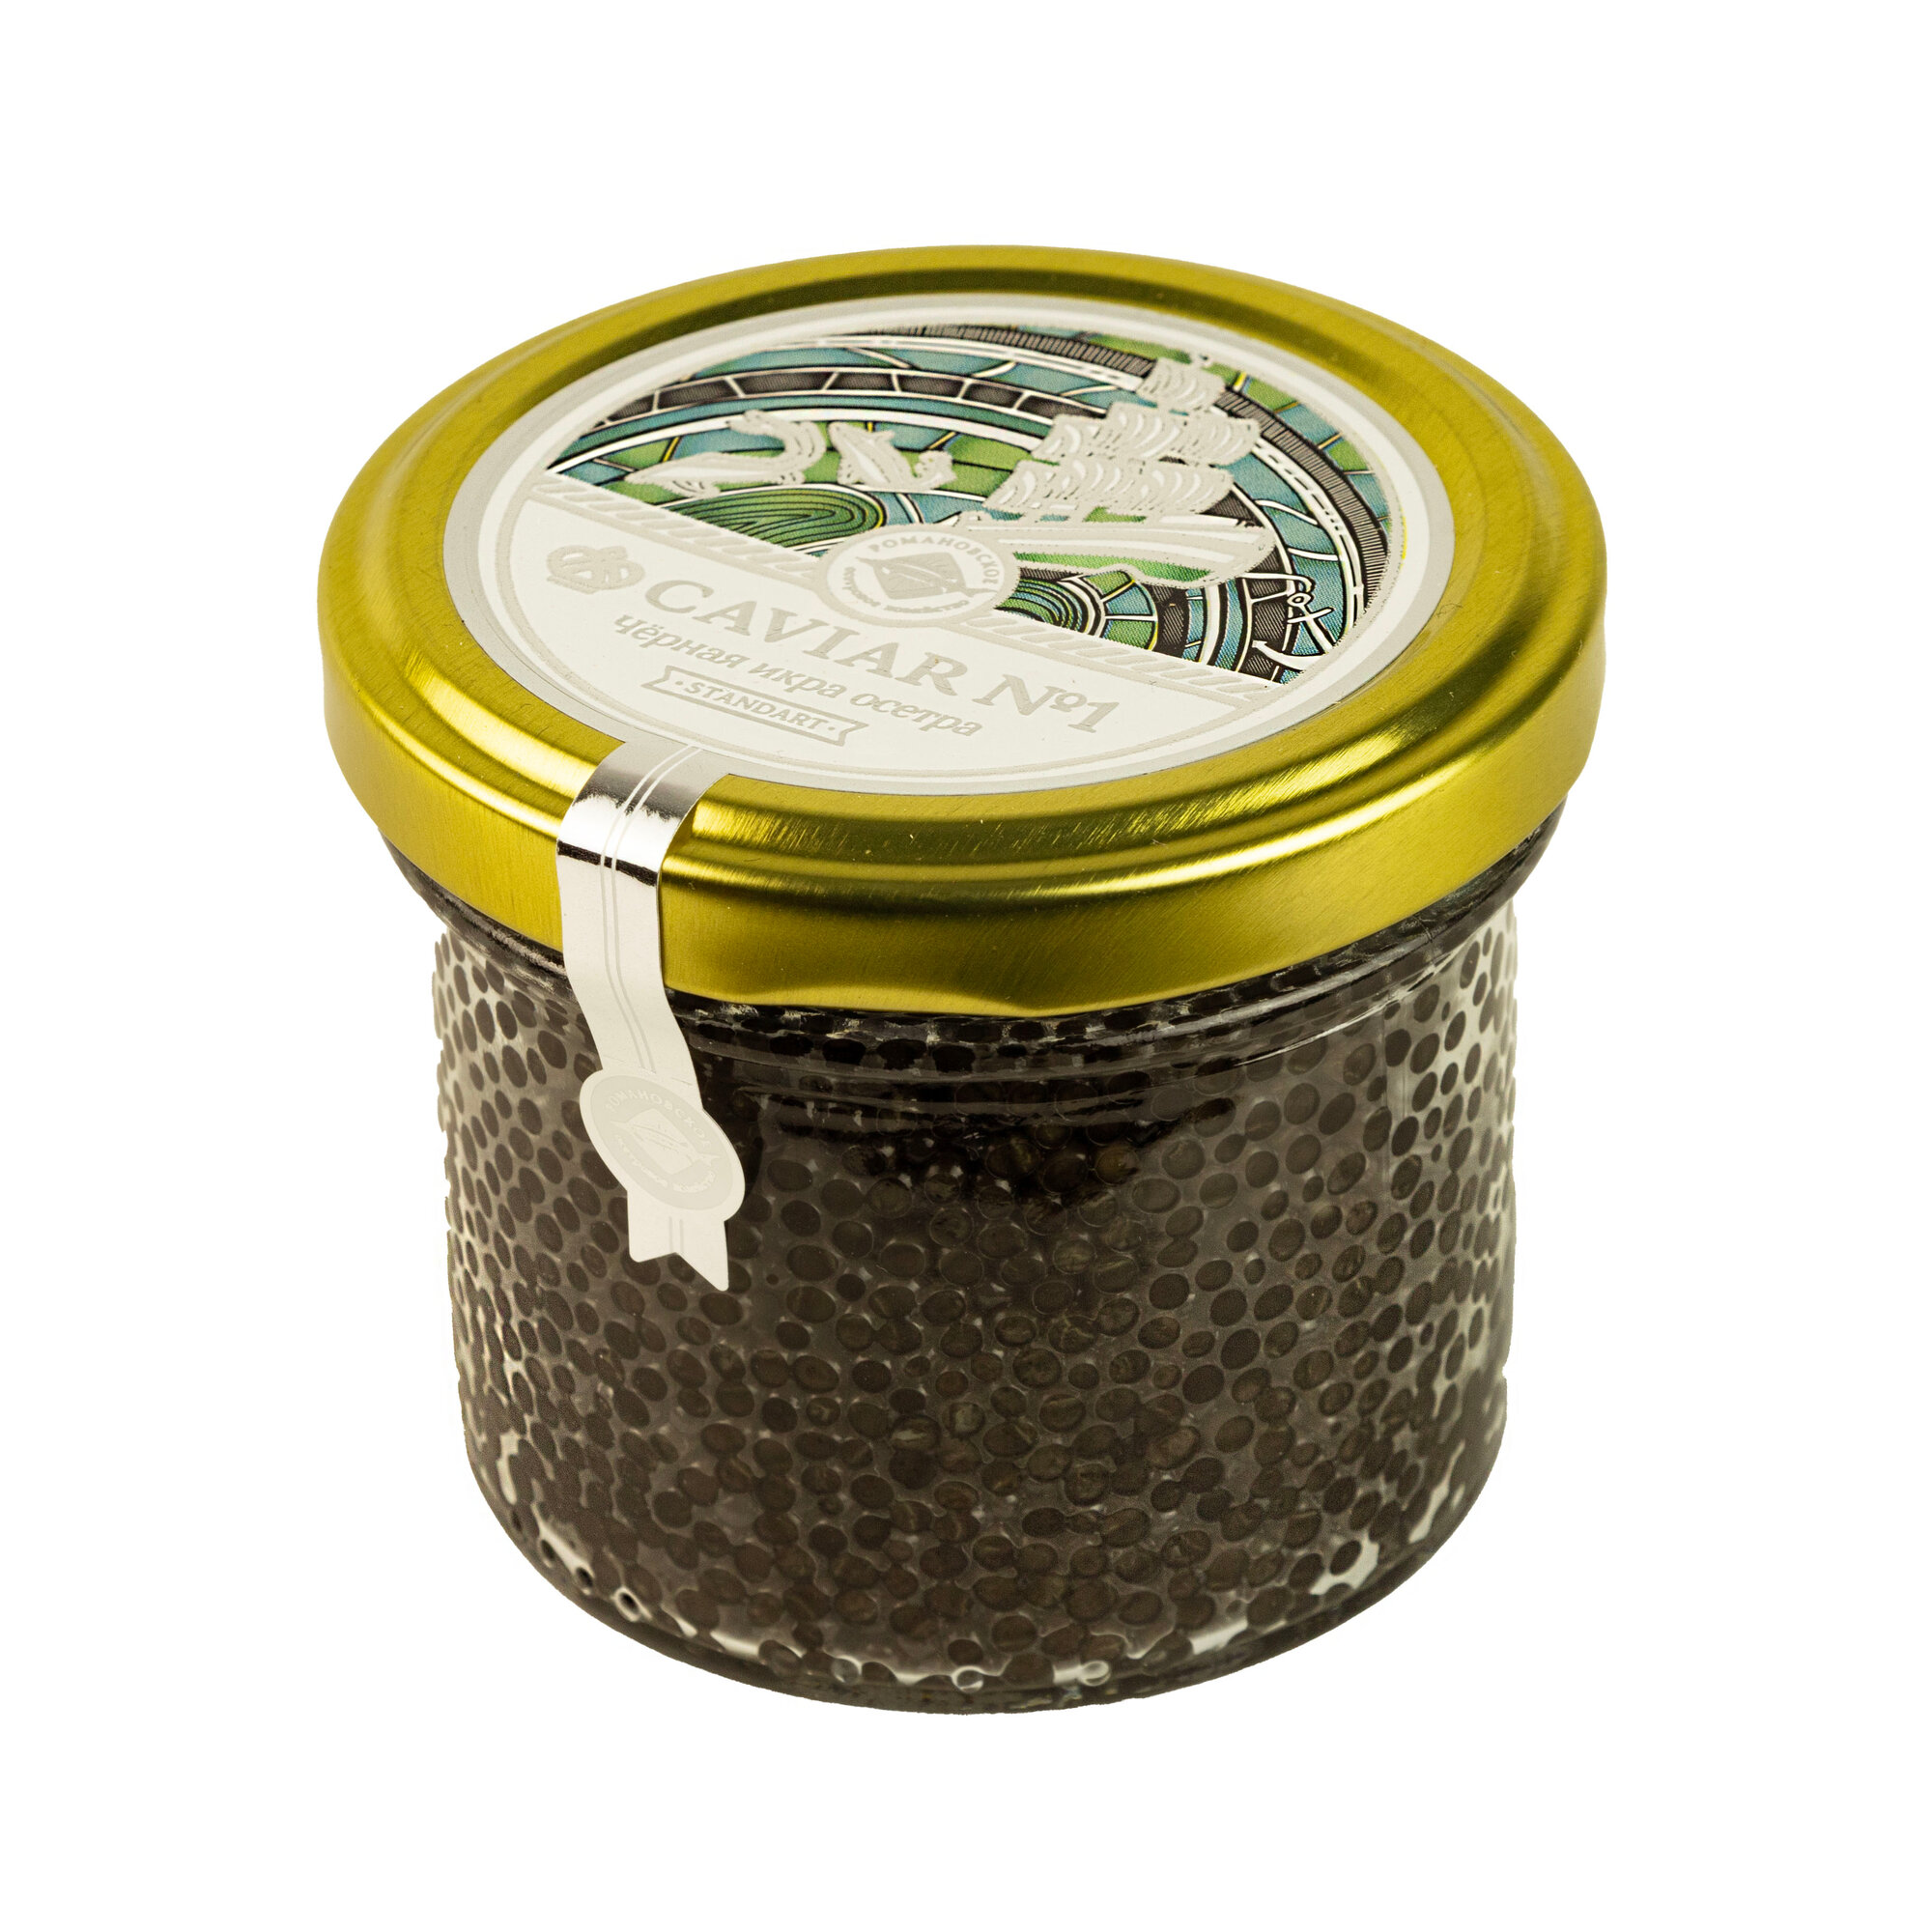 Черная икра осетровых Caviar забойная Standart 200 гр